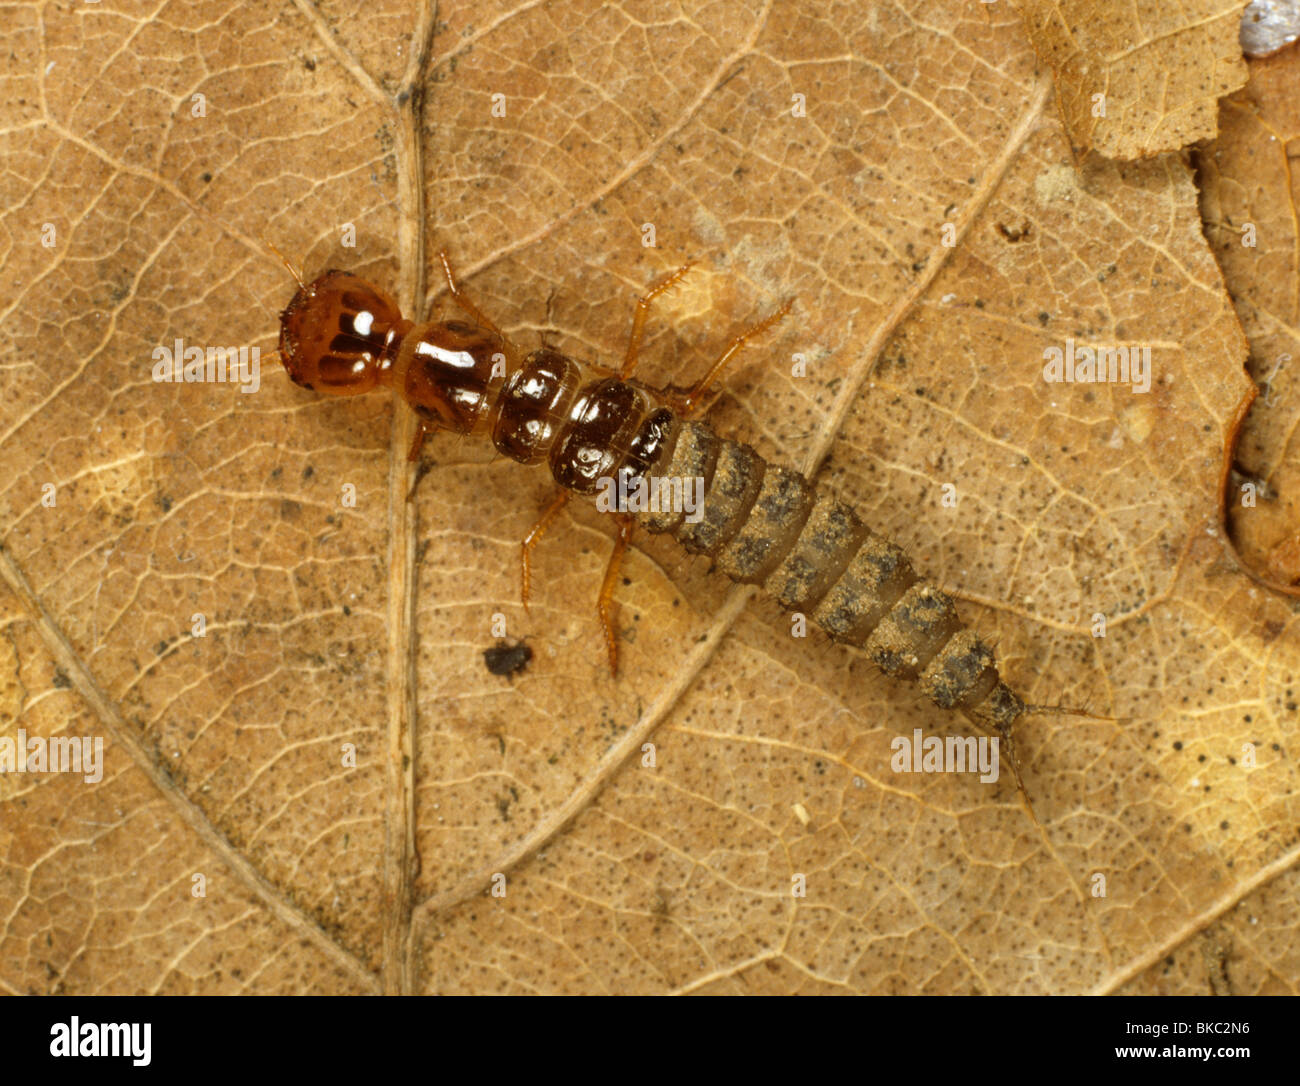 Une larve du sol (Carabidae) des petits insectes prédateurs non identifiés Banque D'Images